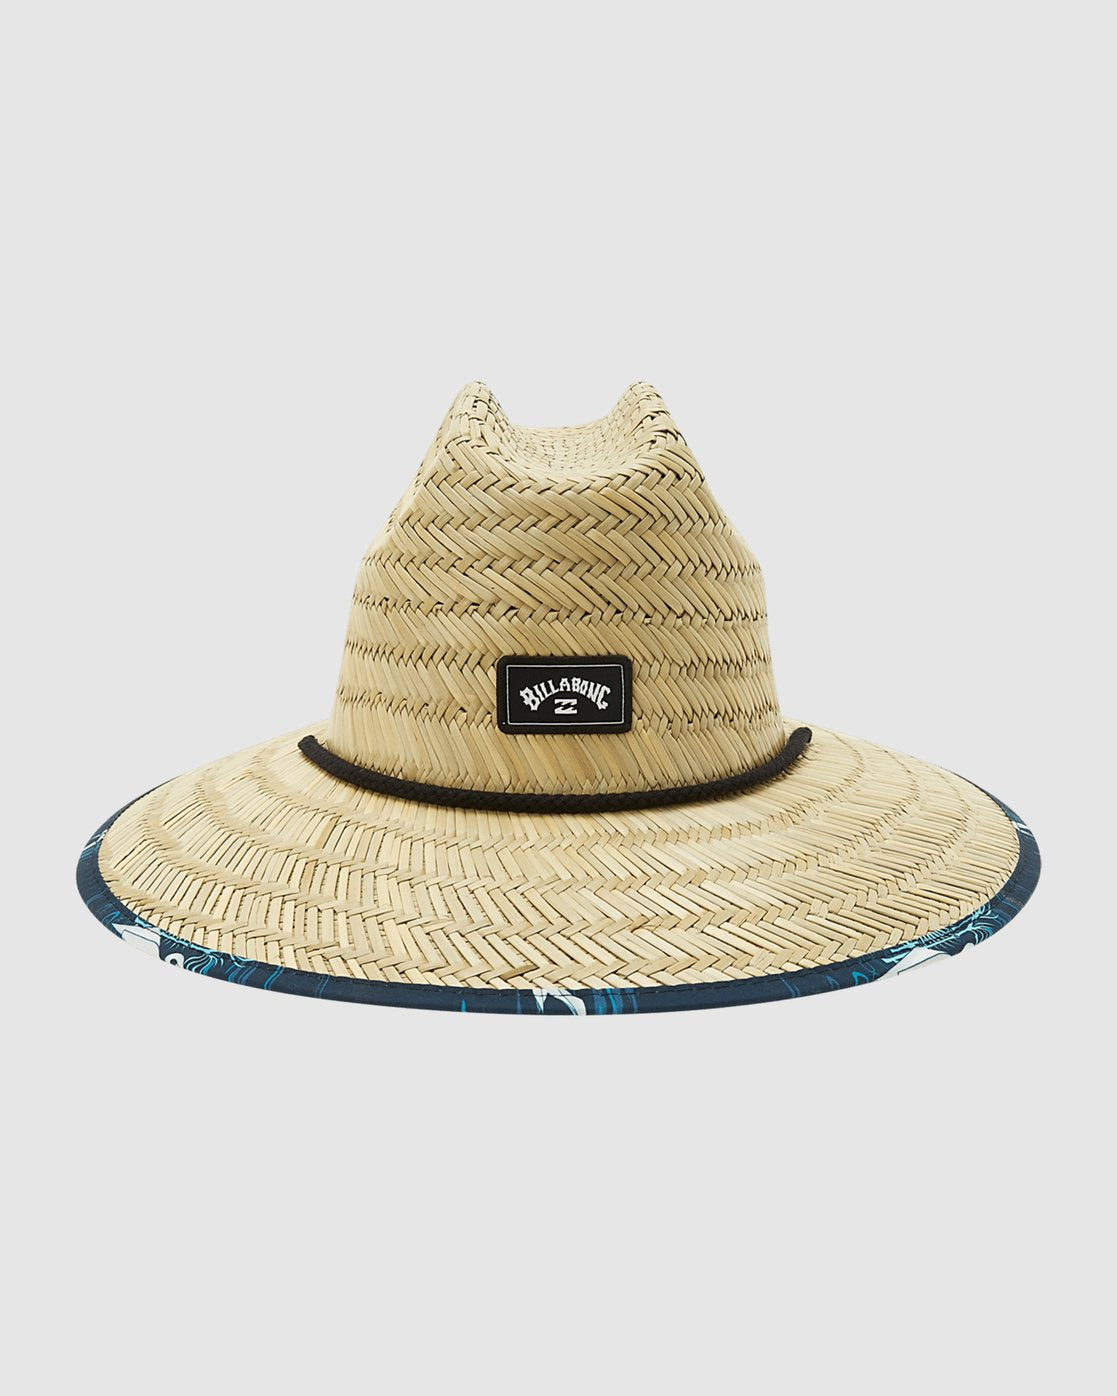 Tides Print Straw Lifeguard Hat